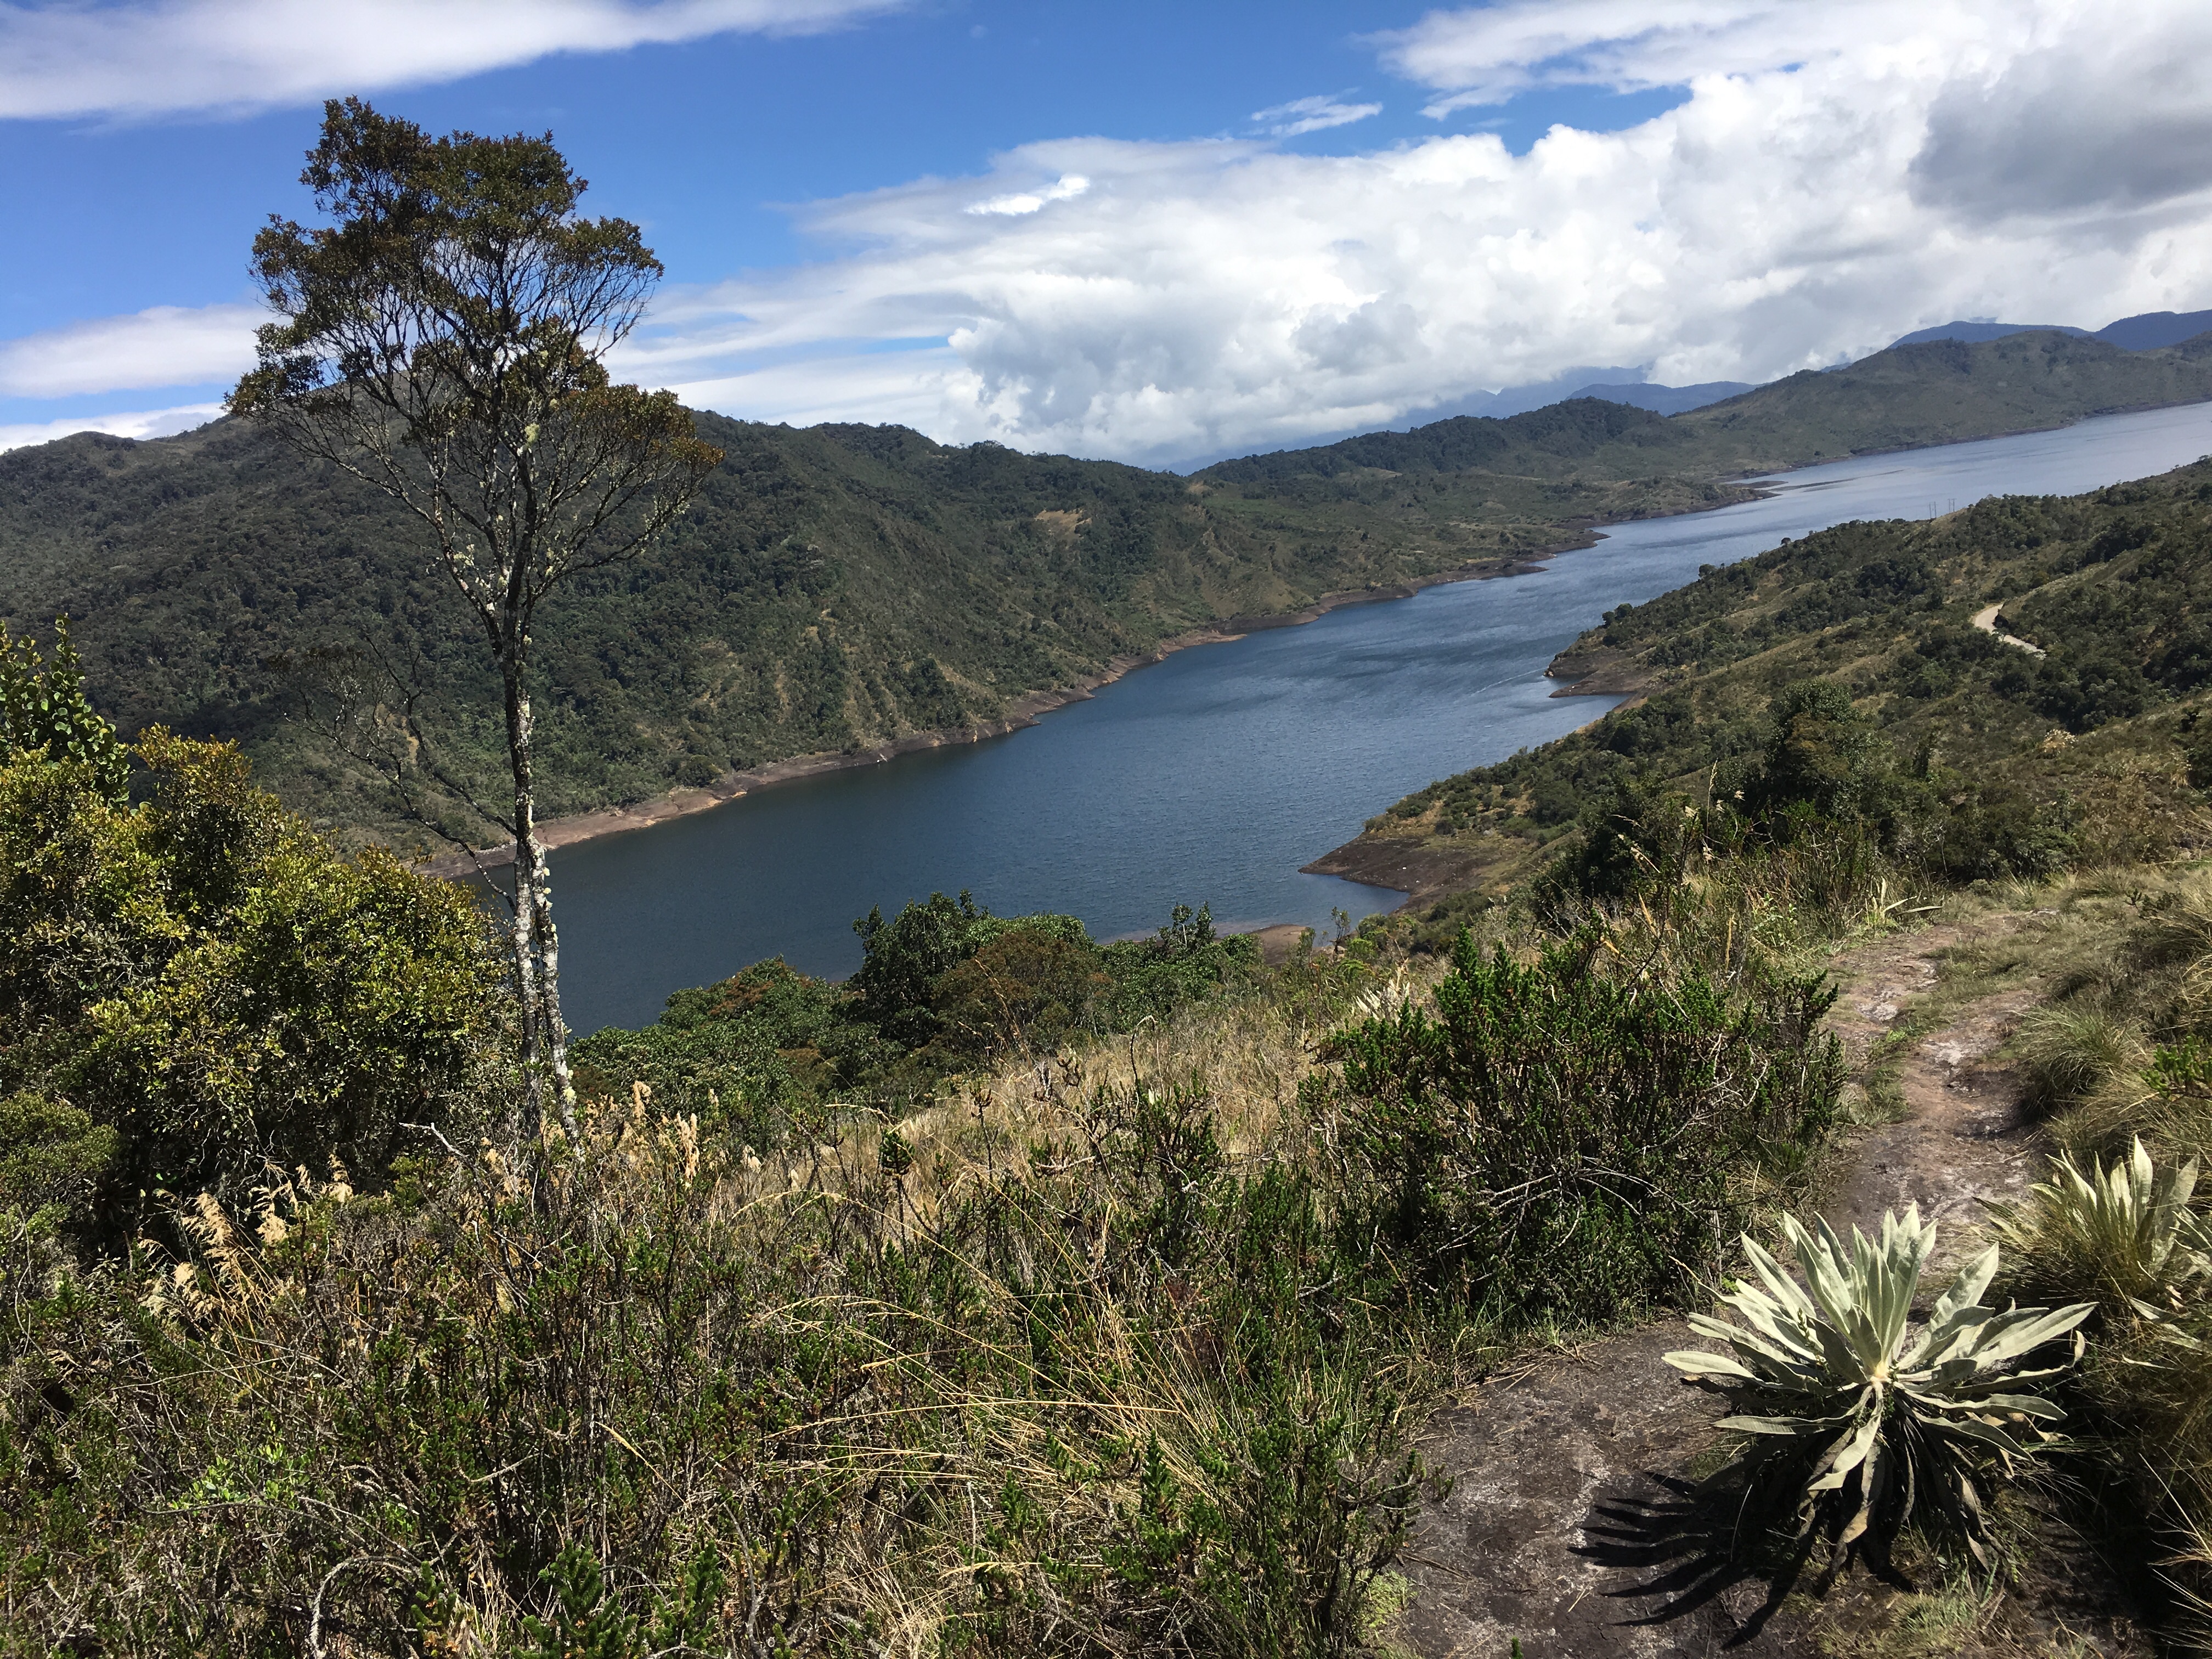 El Parque Nacional Natural Chingaza no solo es un lugar muy lindo. También es muy importante para Colombia, pues provee el 70% del agua que consumen Bogotá -con unos 8 millones de habitantes- y varios municipios cercanos.